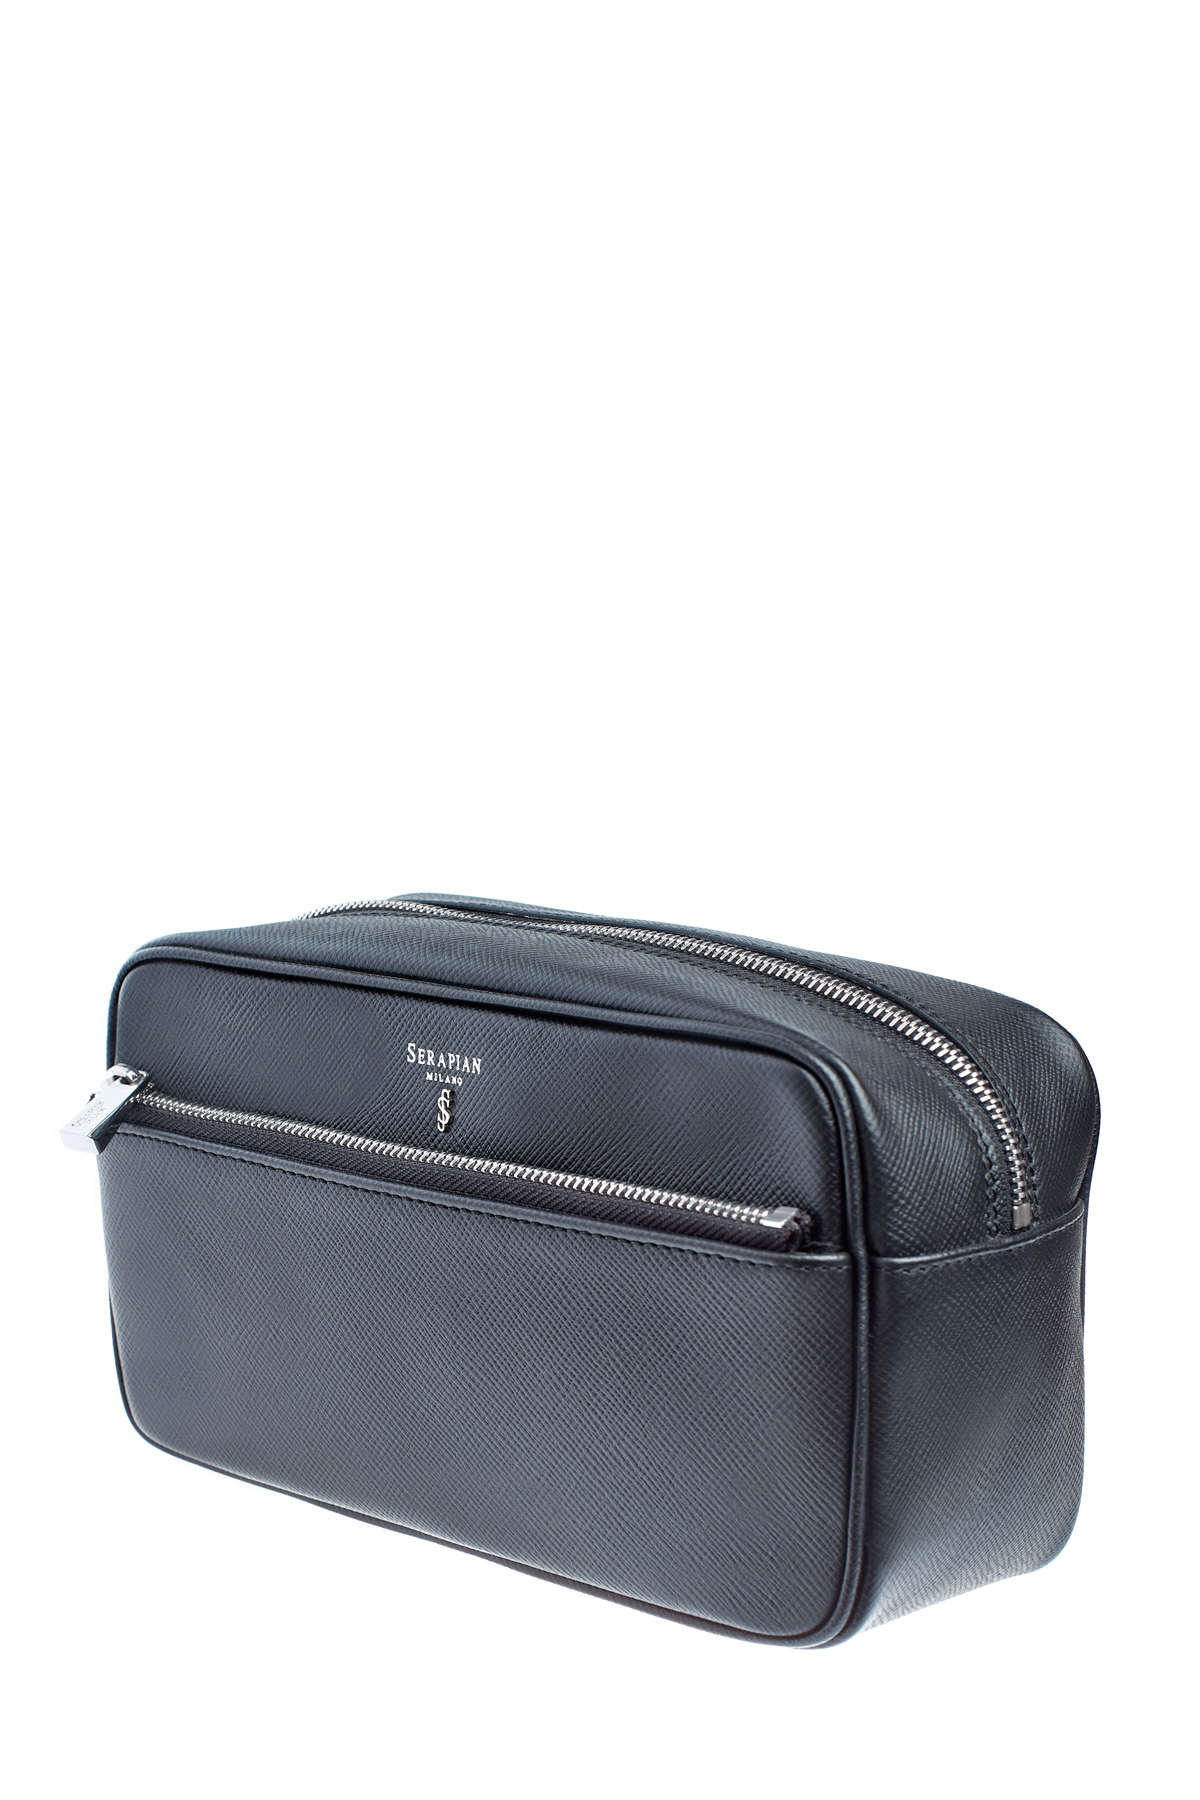 Кожаный несессер в классическом стиле с фирменным сафьяновым тиснением SERAPIAN, цвет черный, размер XS;S;M - фото 4